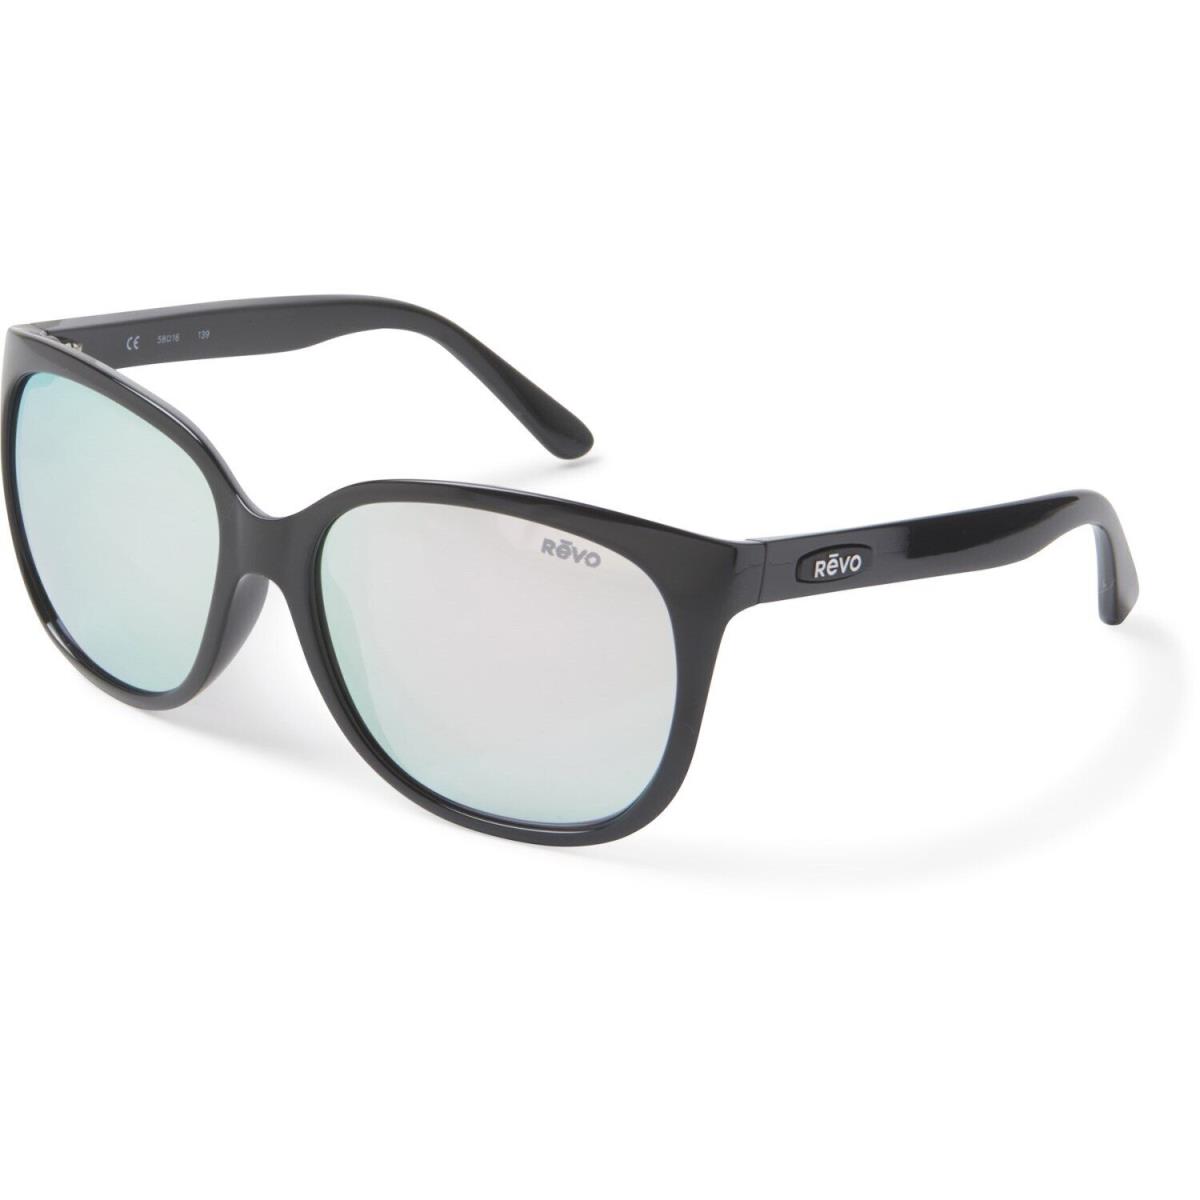 Revo Grand Classic Polarized Sunglasses - RE 4051 01ST/ClassicBlack/Stealth